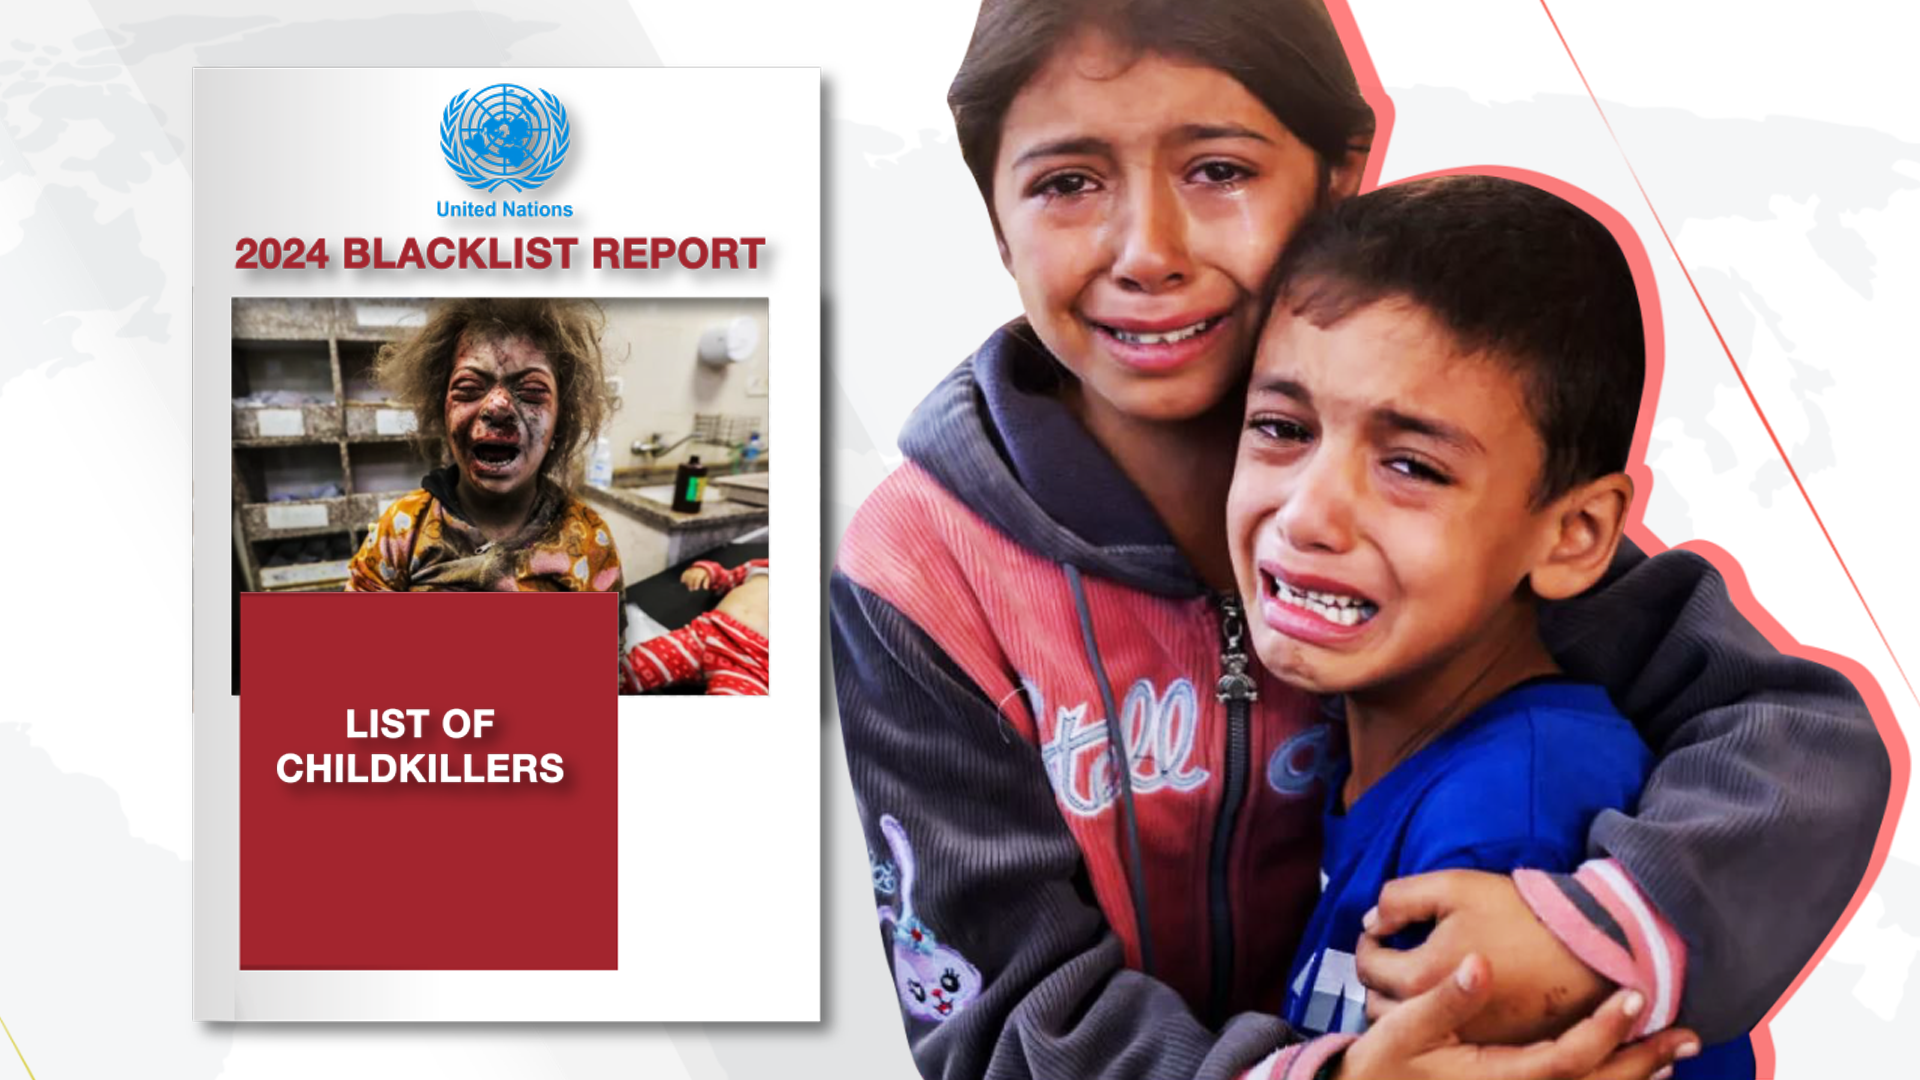 UN’s 2024 blacklist report of child-killers